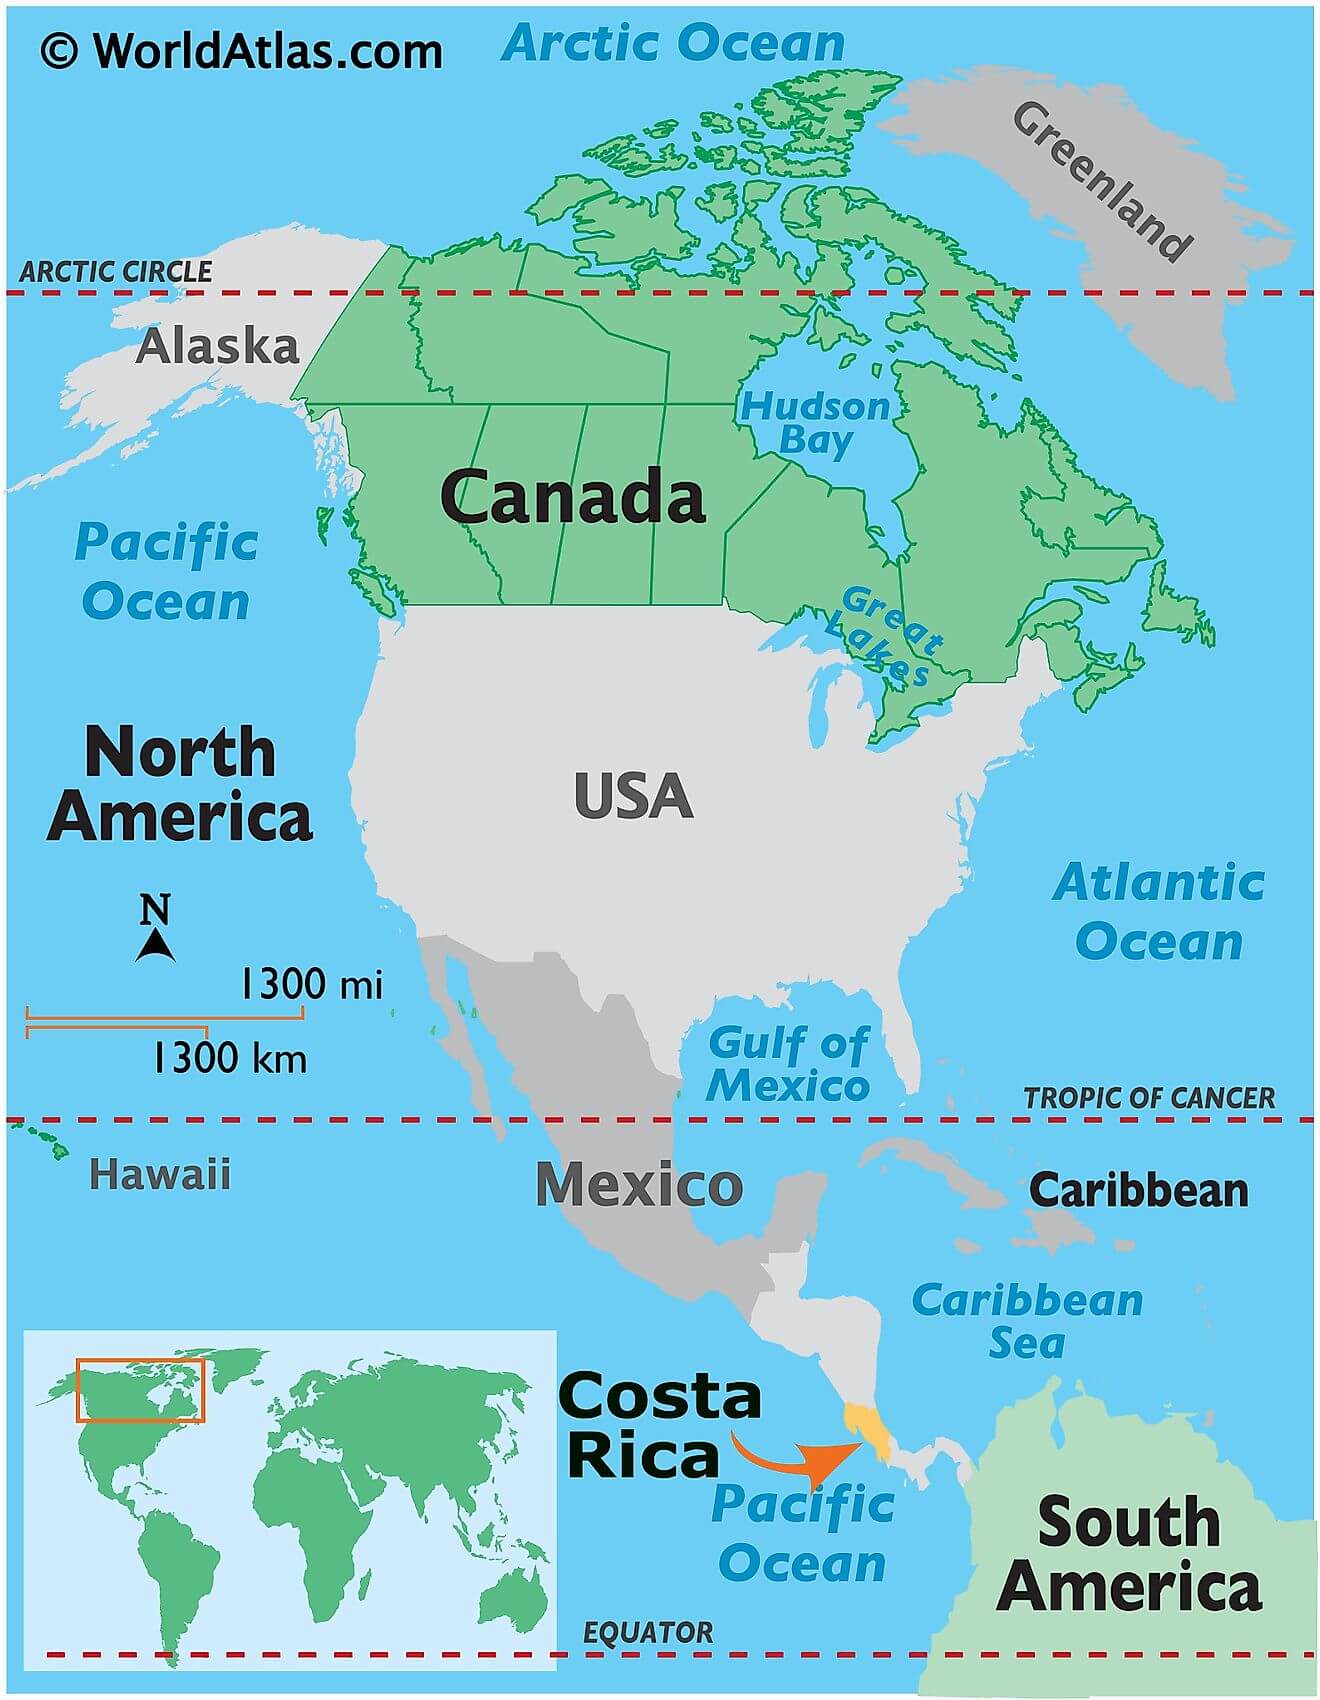 Costa Rica ở đâu?